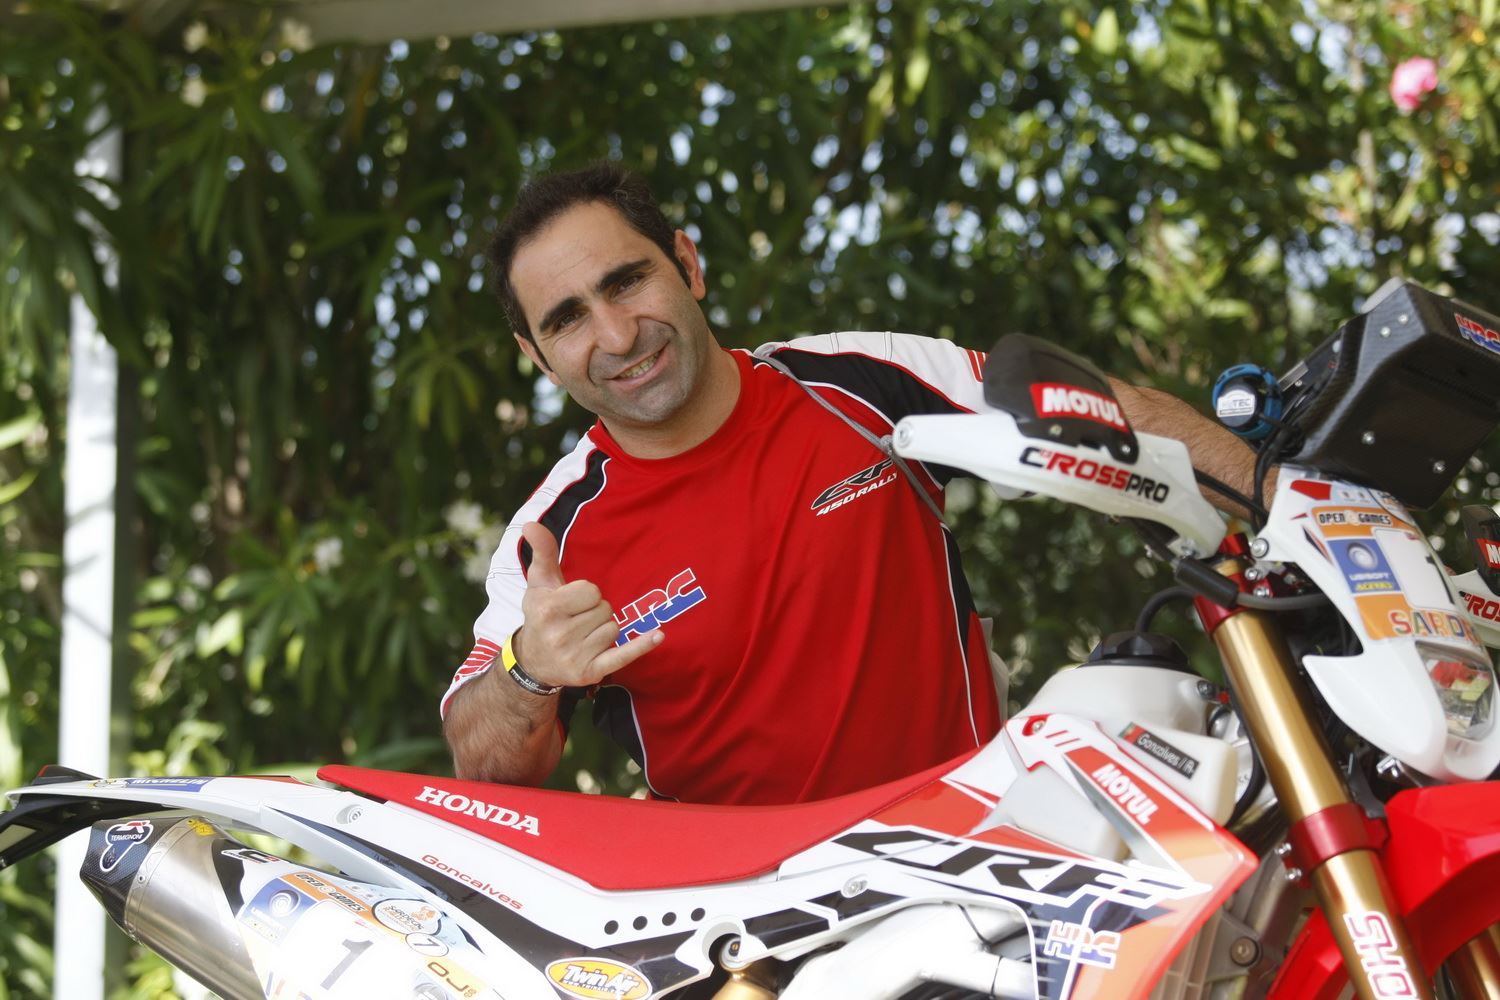 Miguel Praia foi 5º no Moto 1000GP em Interlagos após problema com pneu -  Honda - Notícias - Andar de Moto